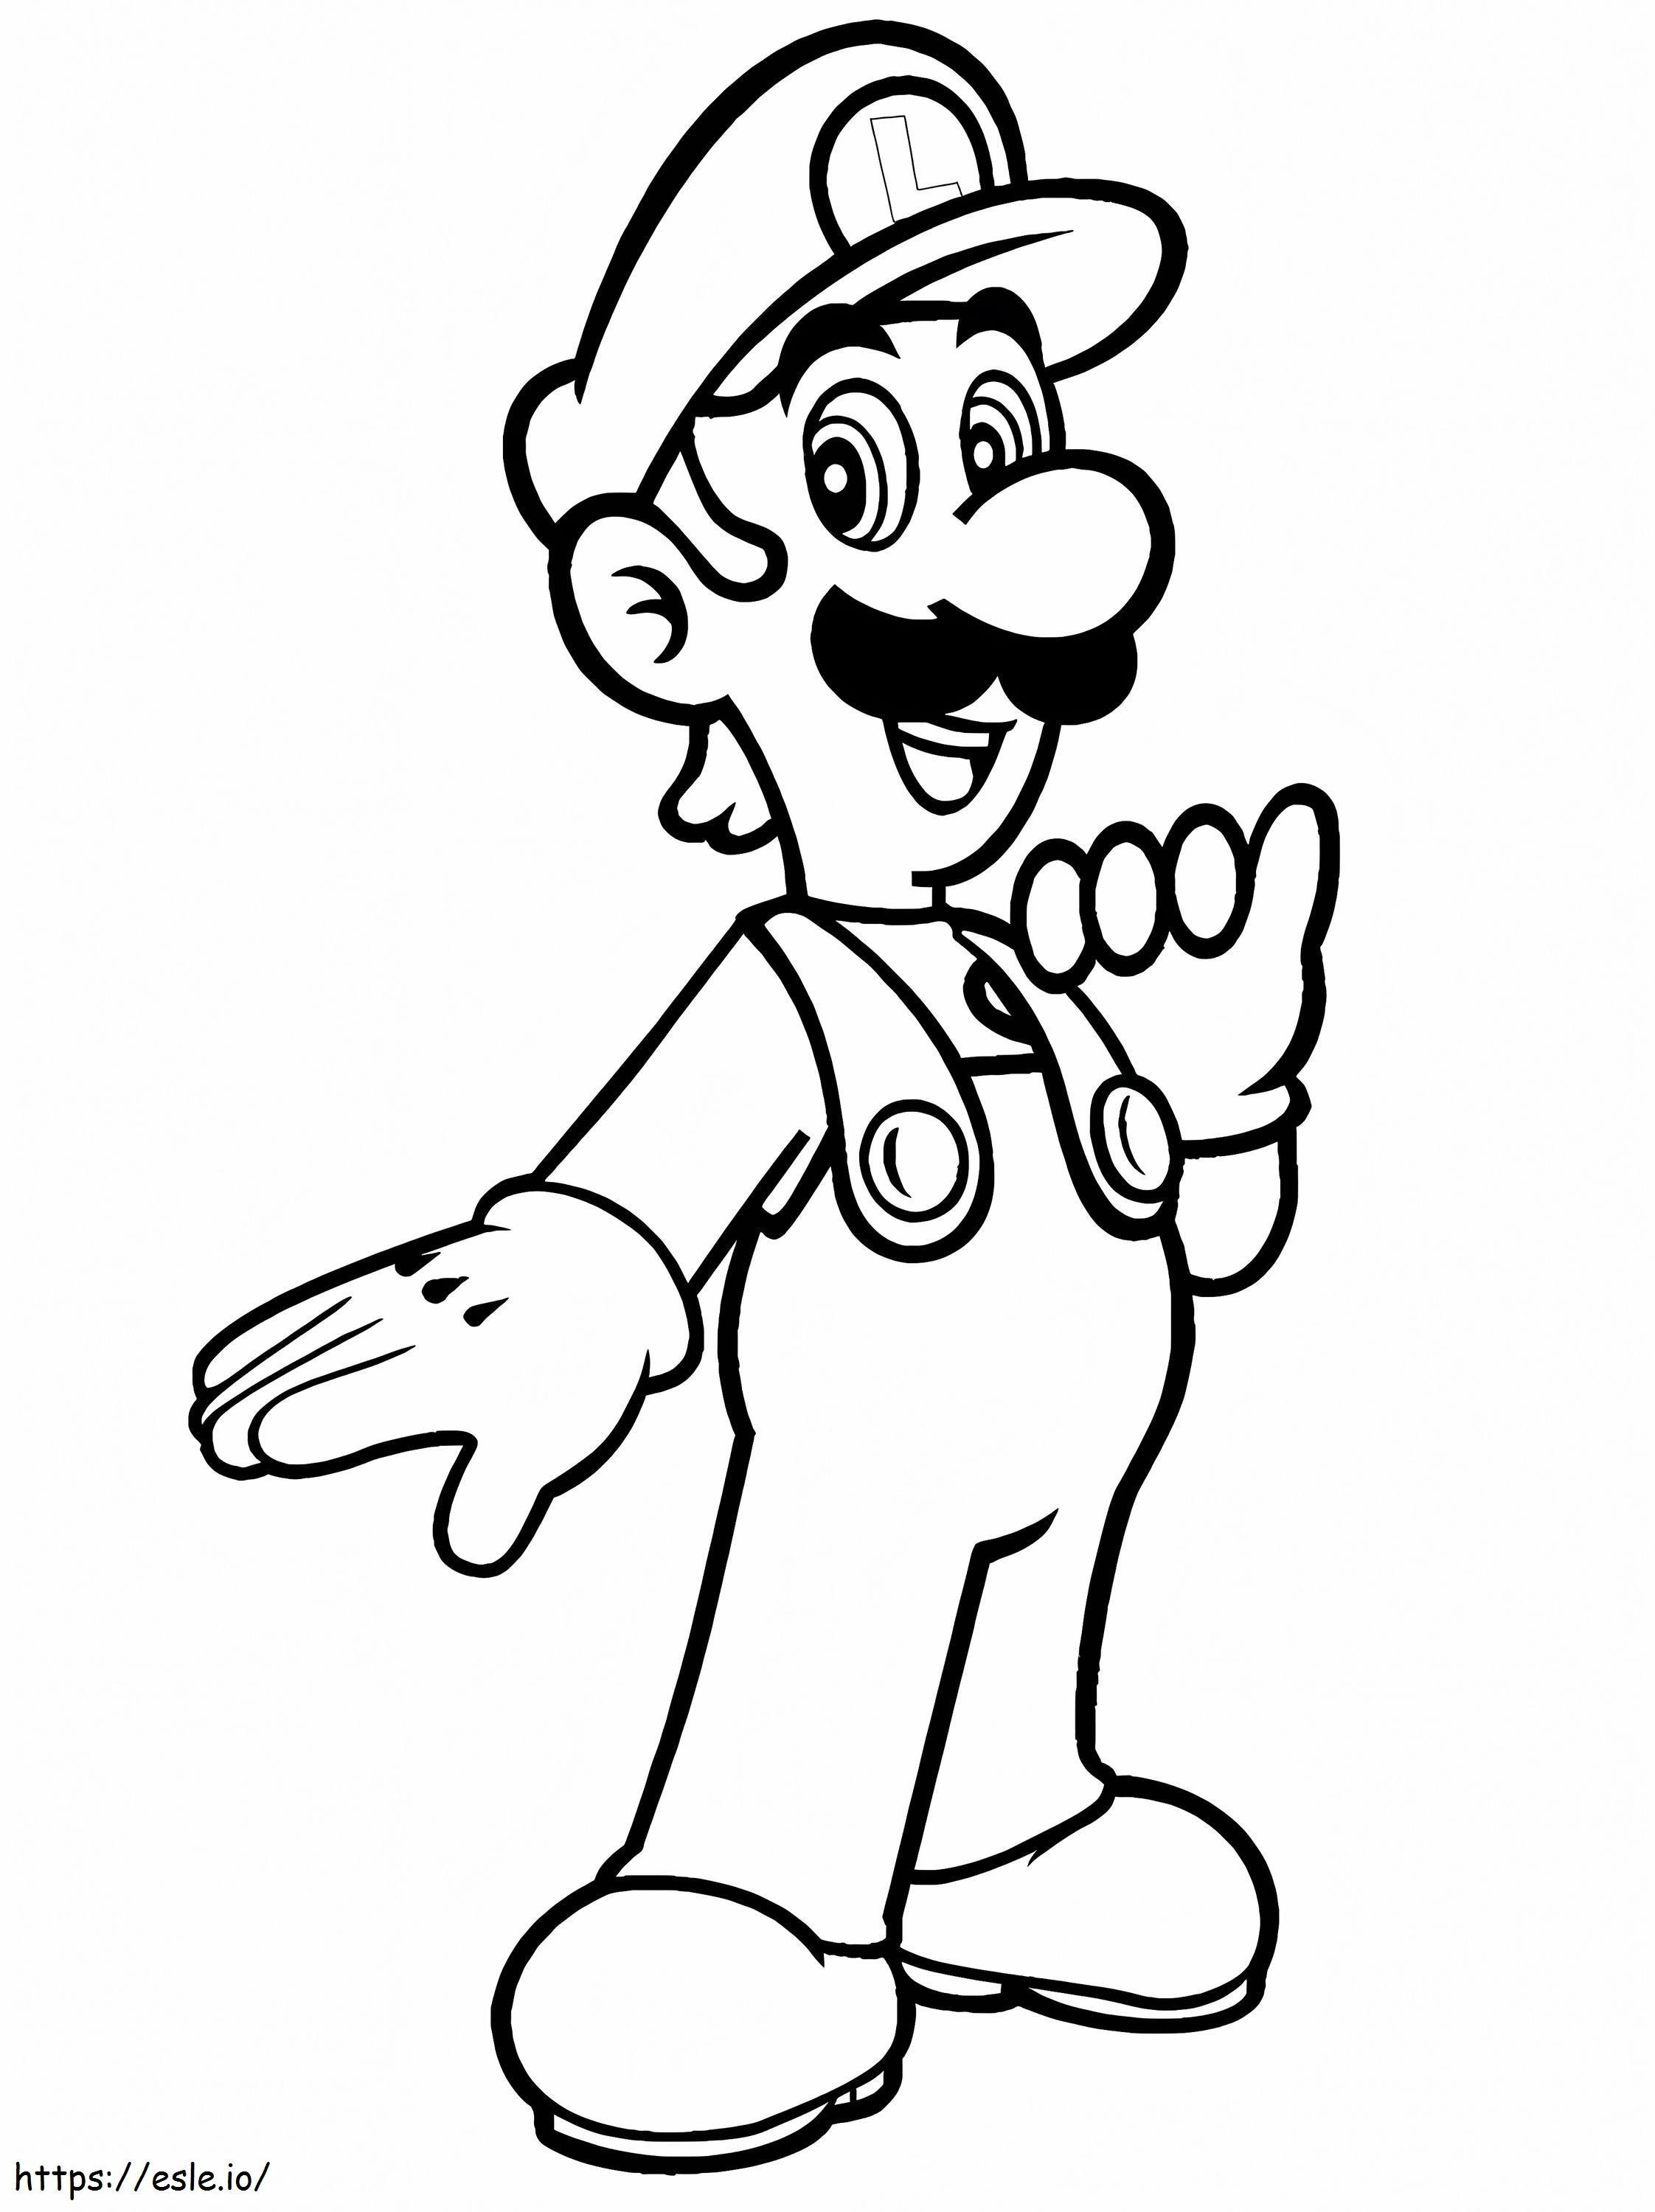 Luis De Super Mario 1 para colorear